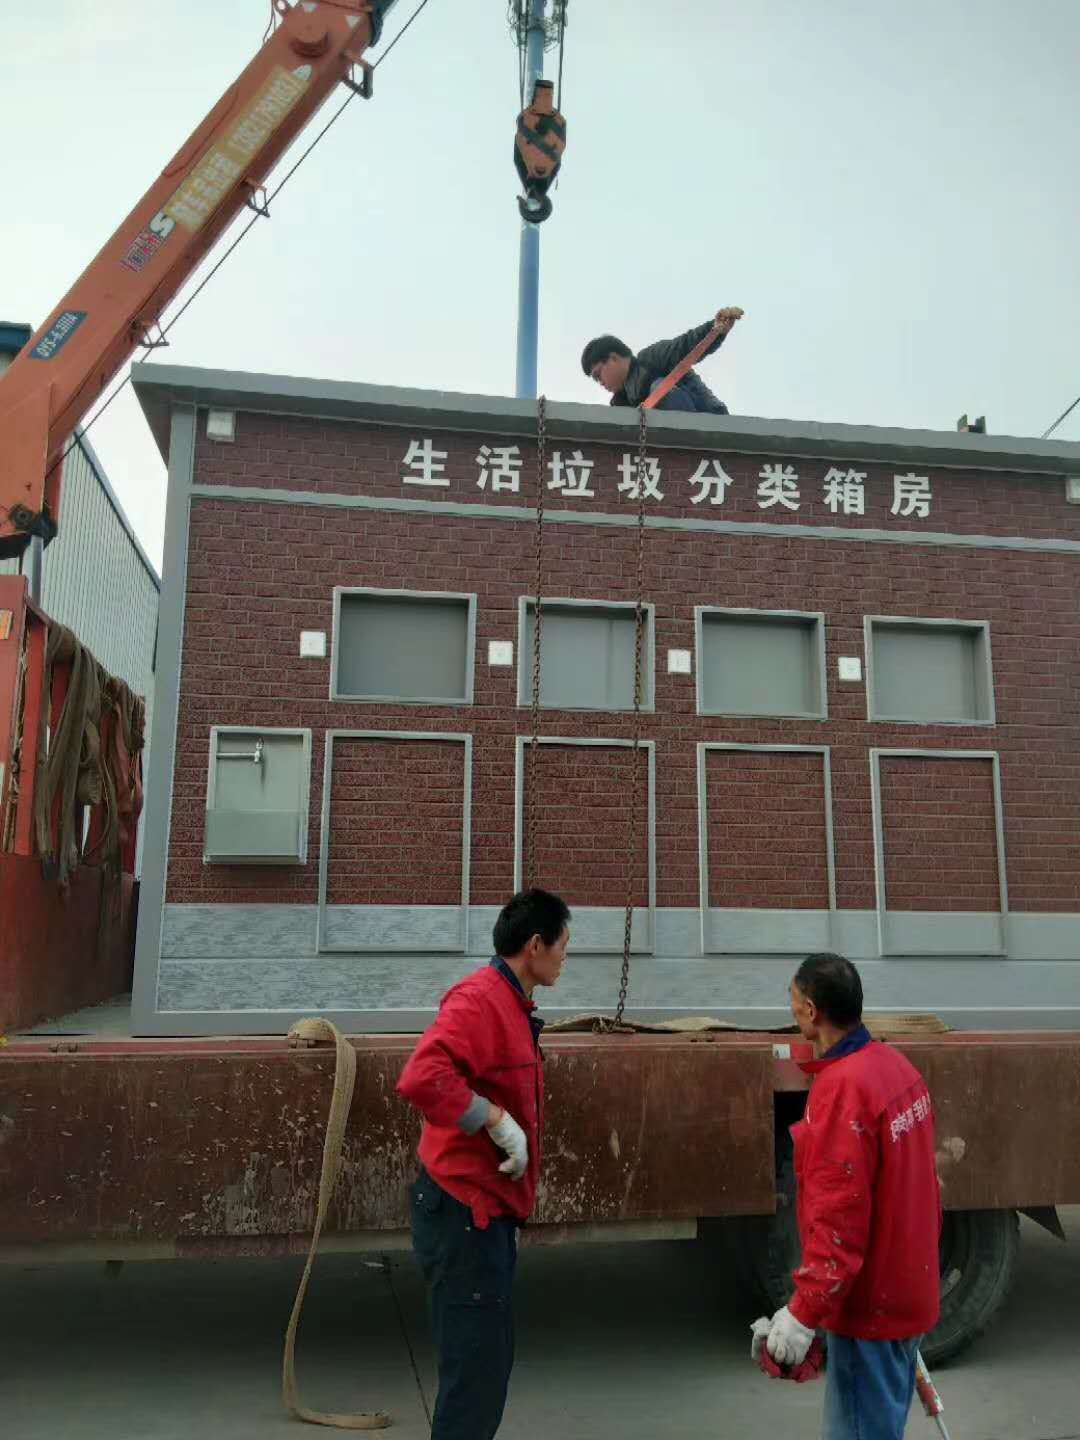 内蒙古 内蒙古移动环保金属雕花板厕所厂家